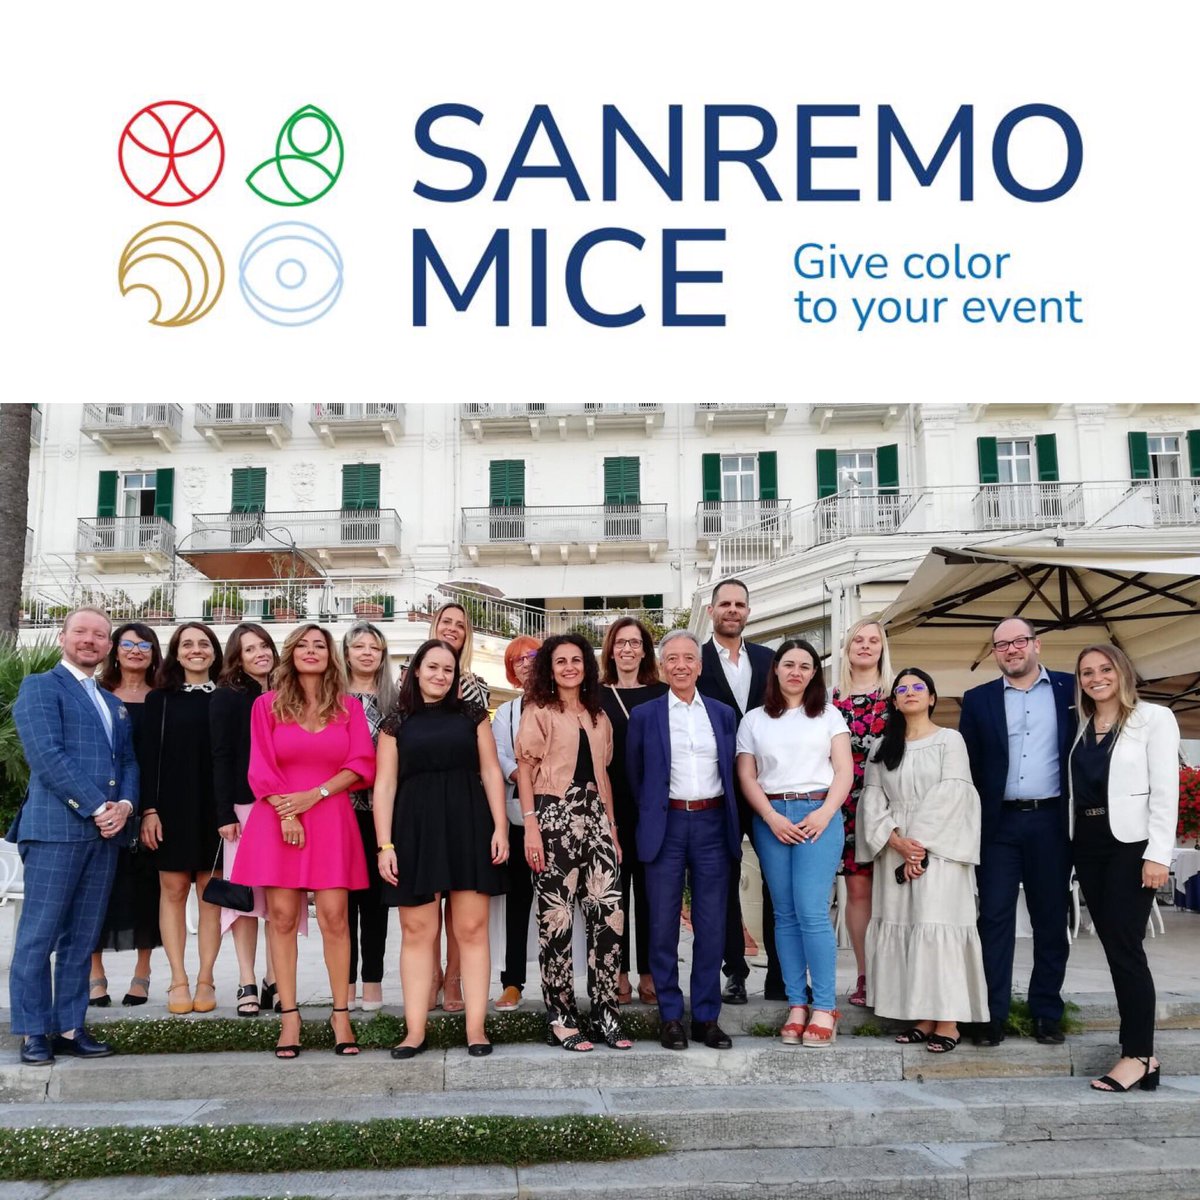 Il progetto #SanremoMICE al via! #eventprofs pronti a scoprire le tante novità e le bellezze della città #Sanremoisback #EdimanEventi @MeetingeCongr